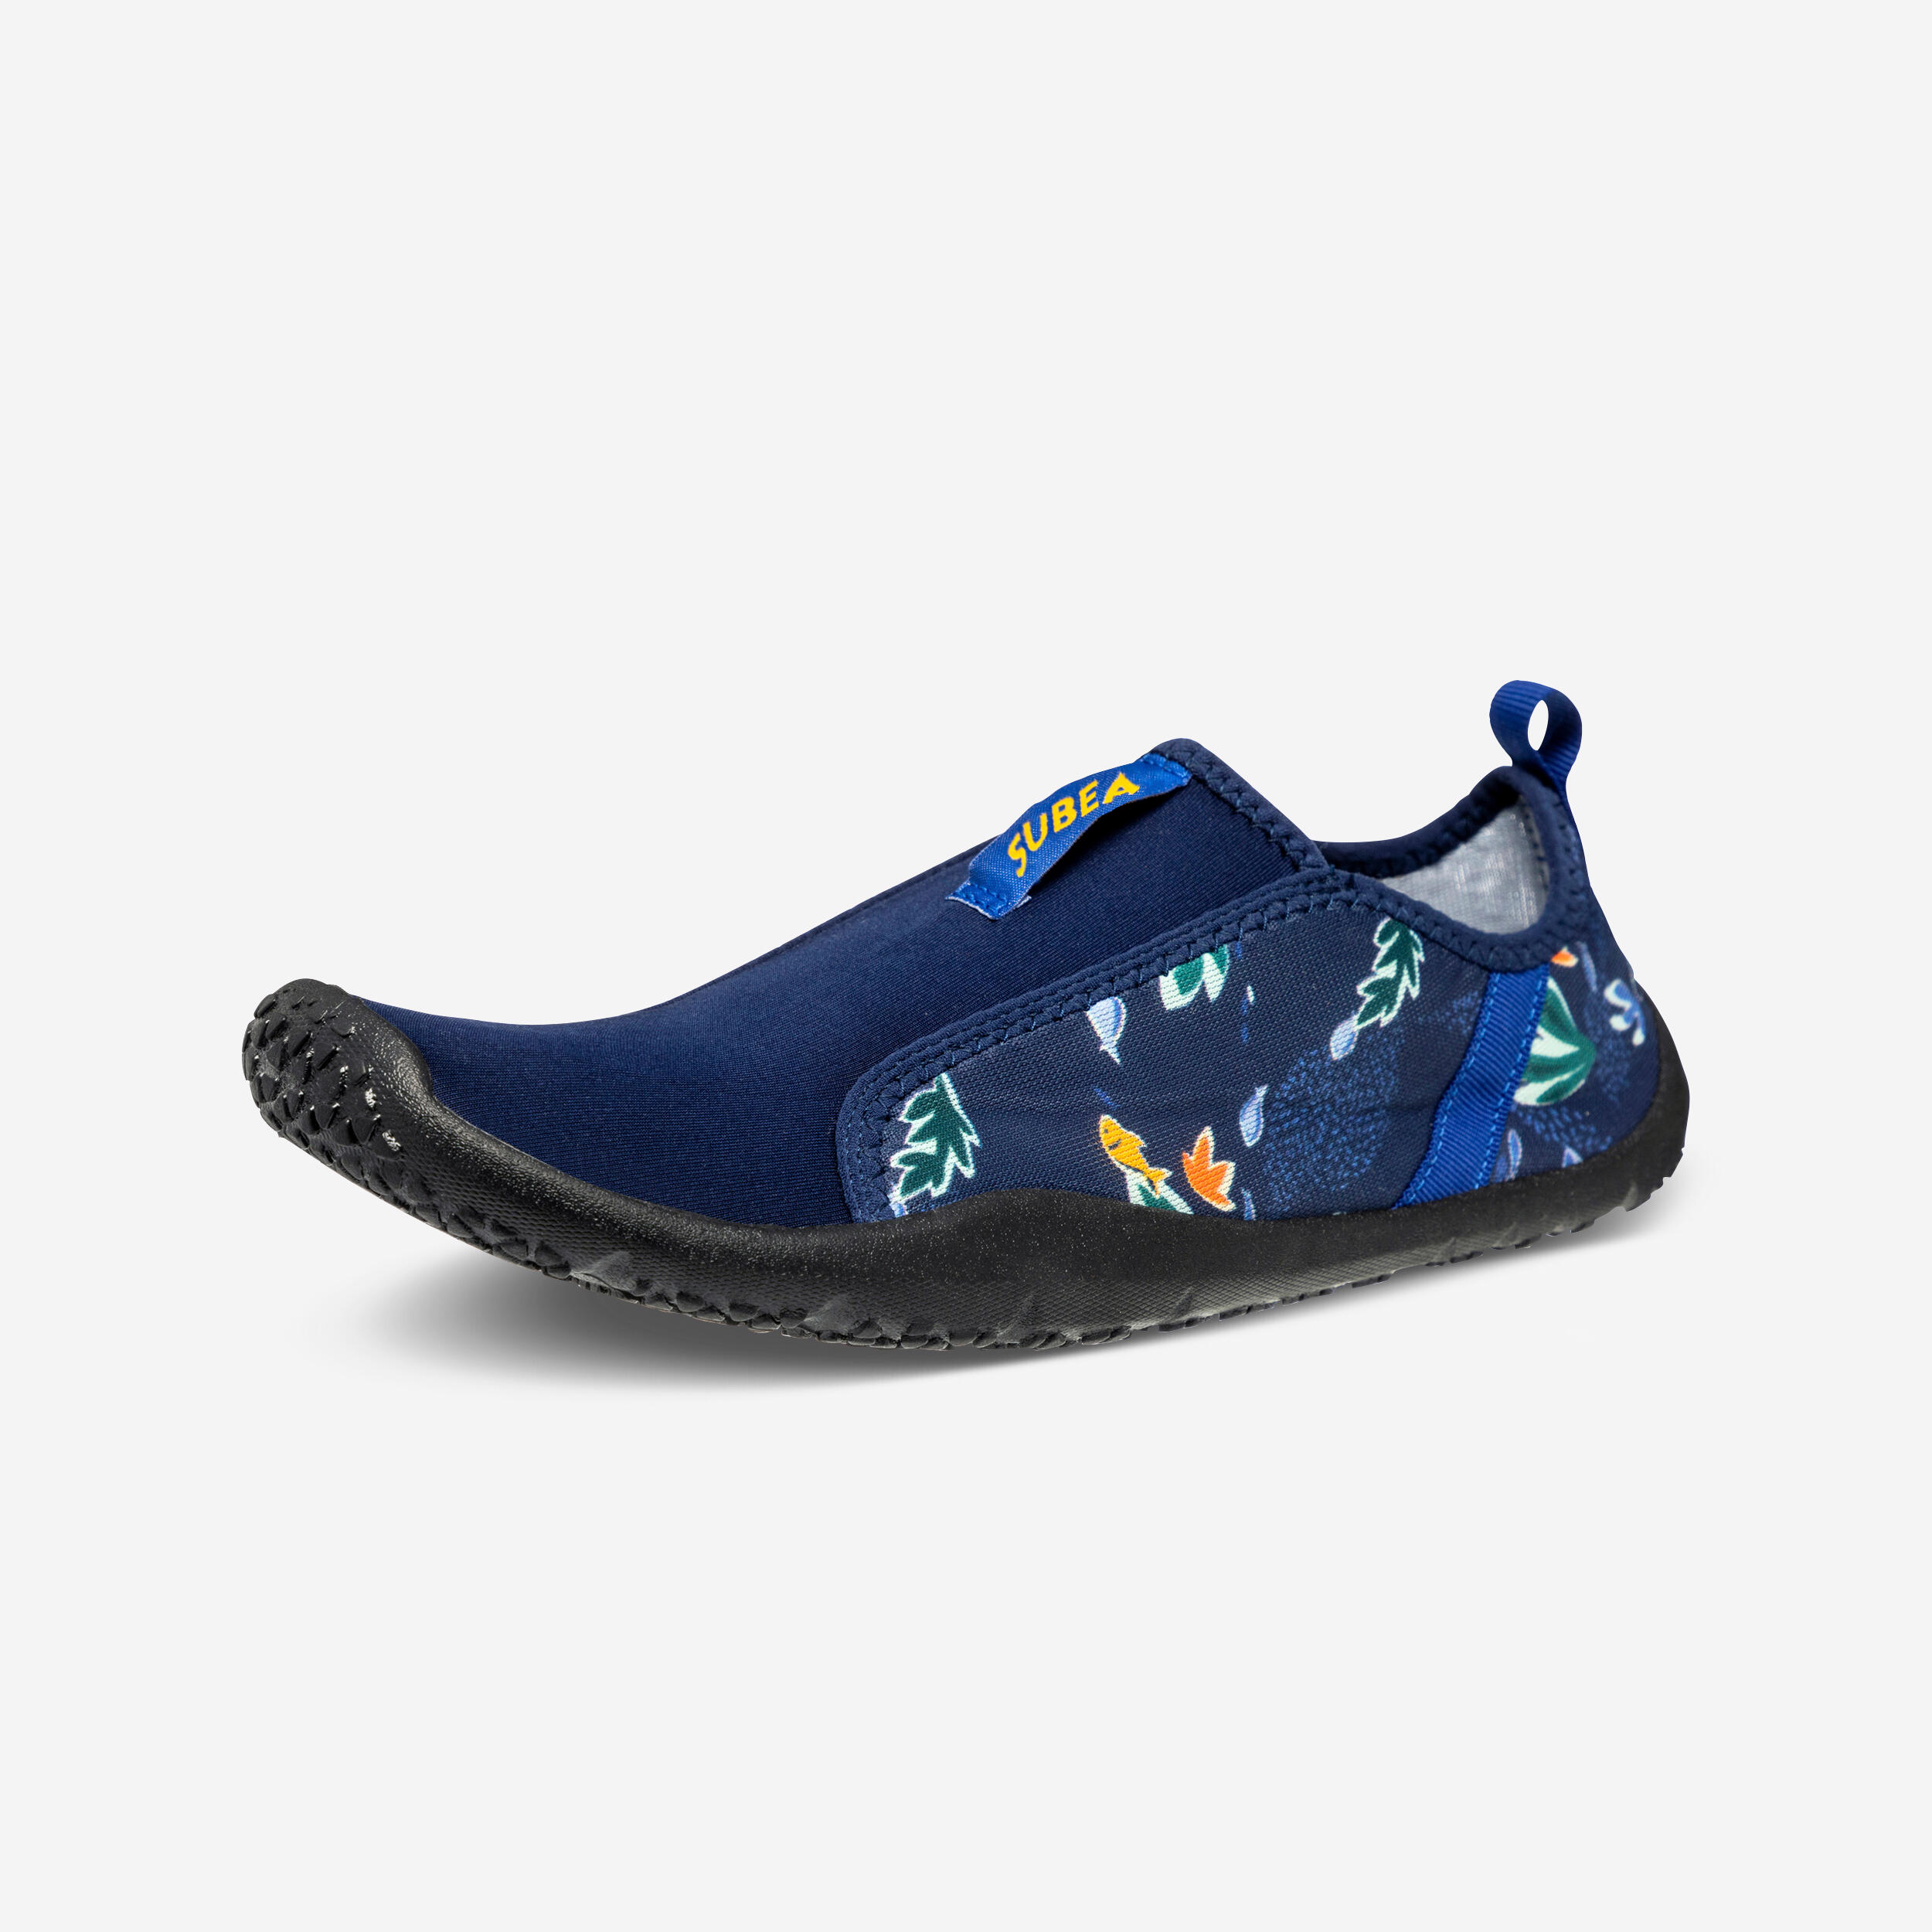 SUBEA Adults elasticated aquashoes - Aquashoes 120 med sea black soles